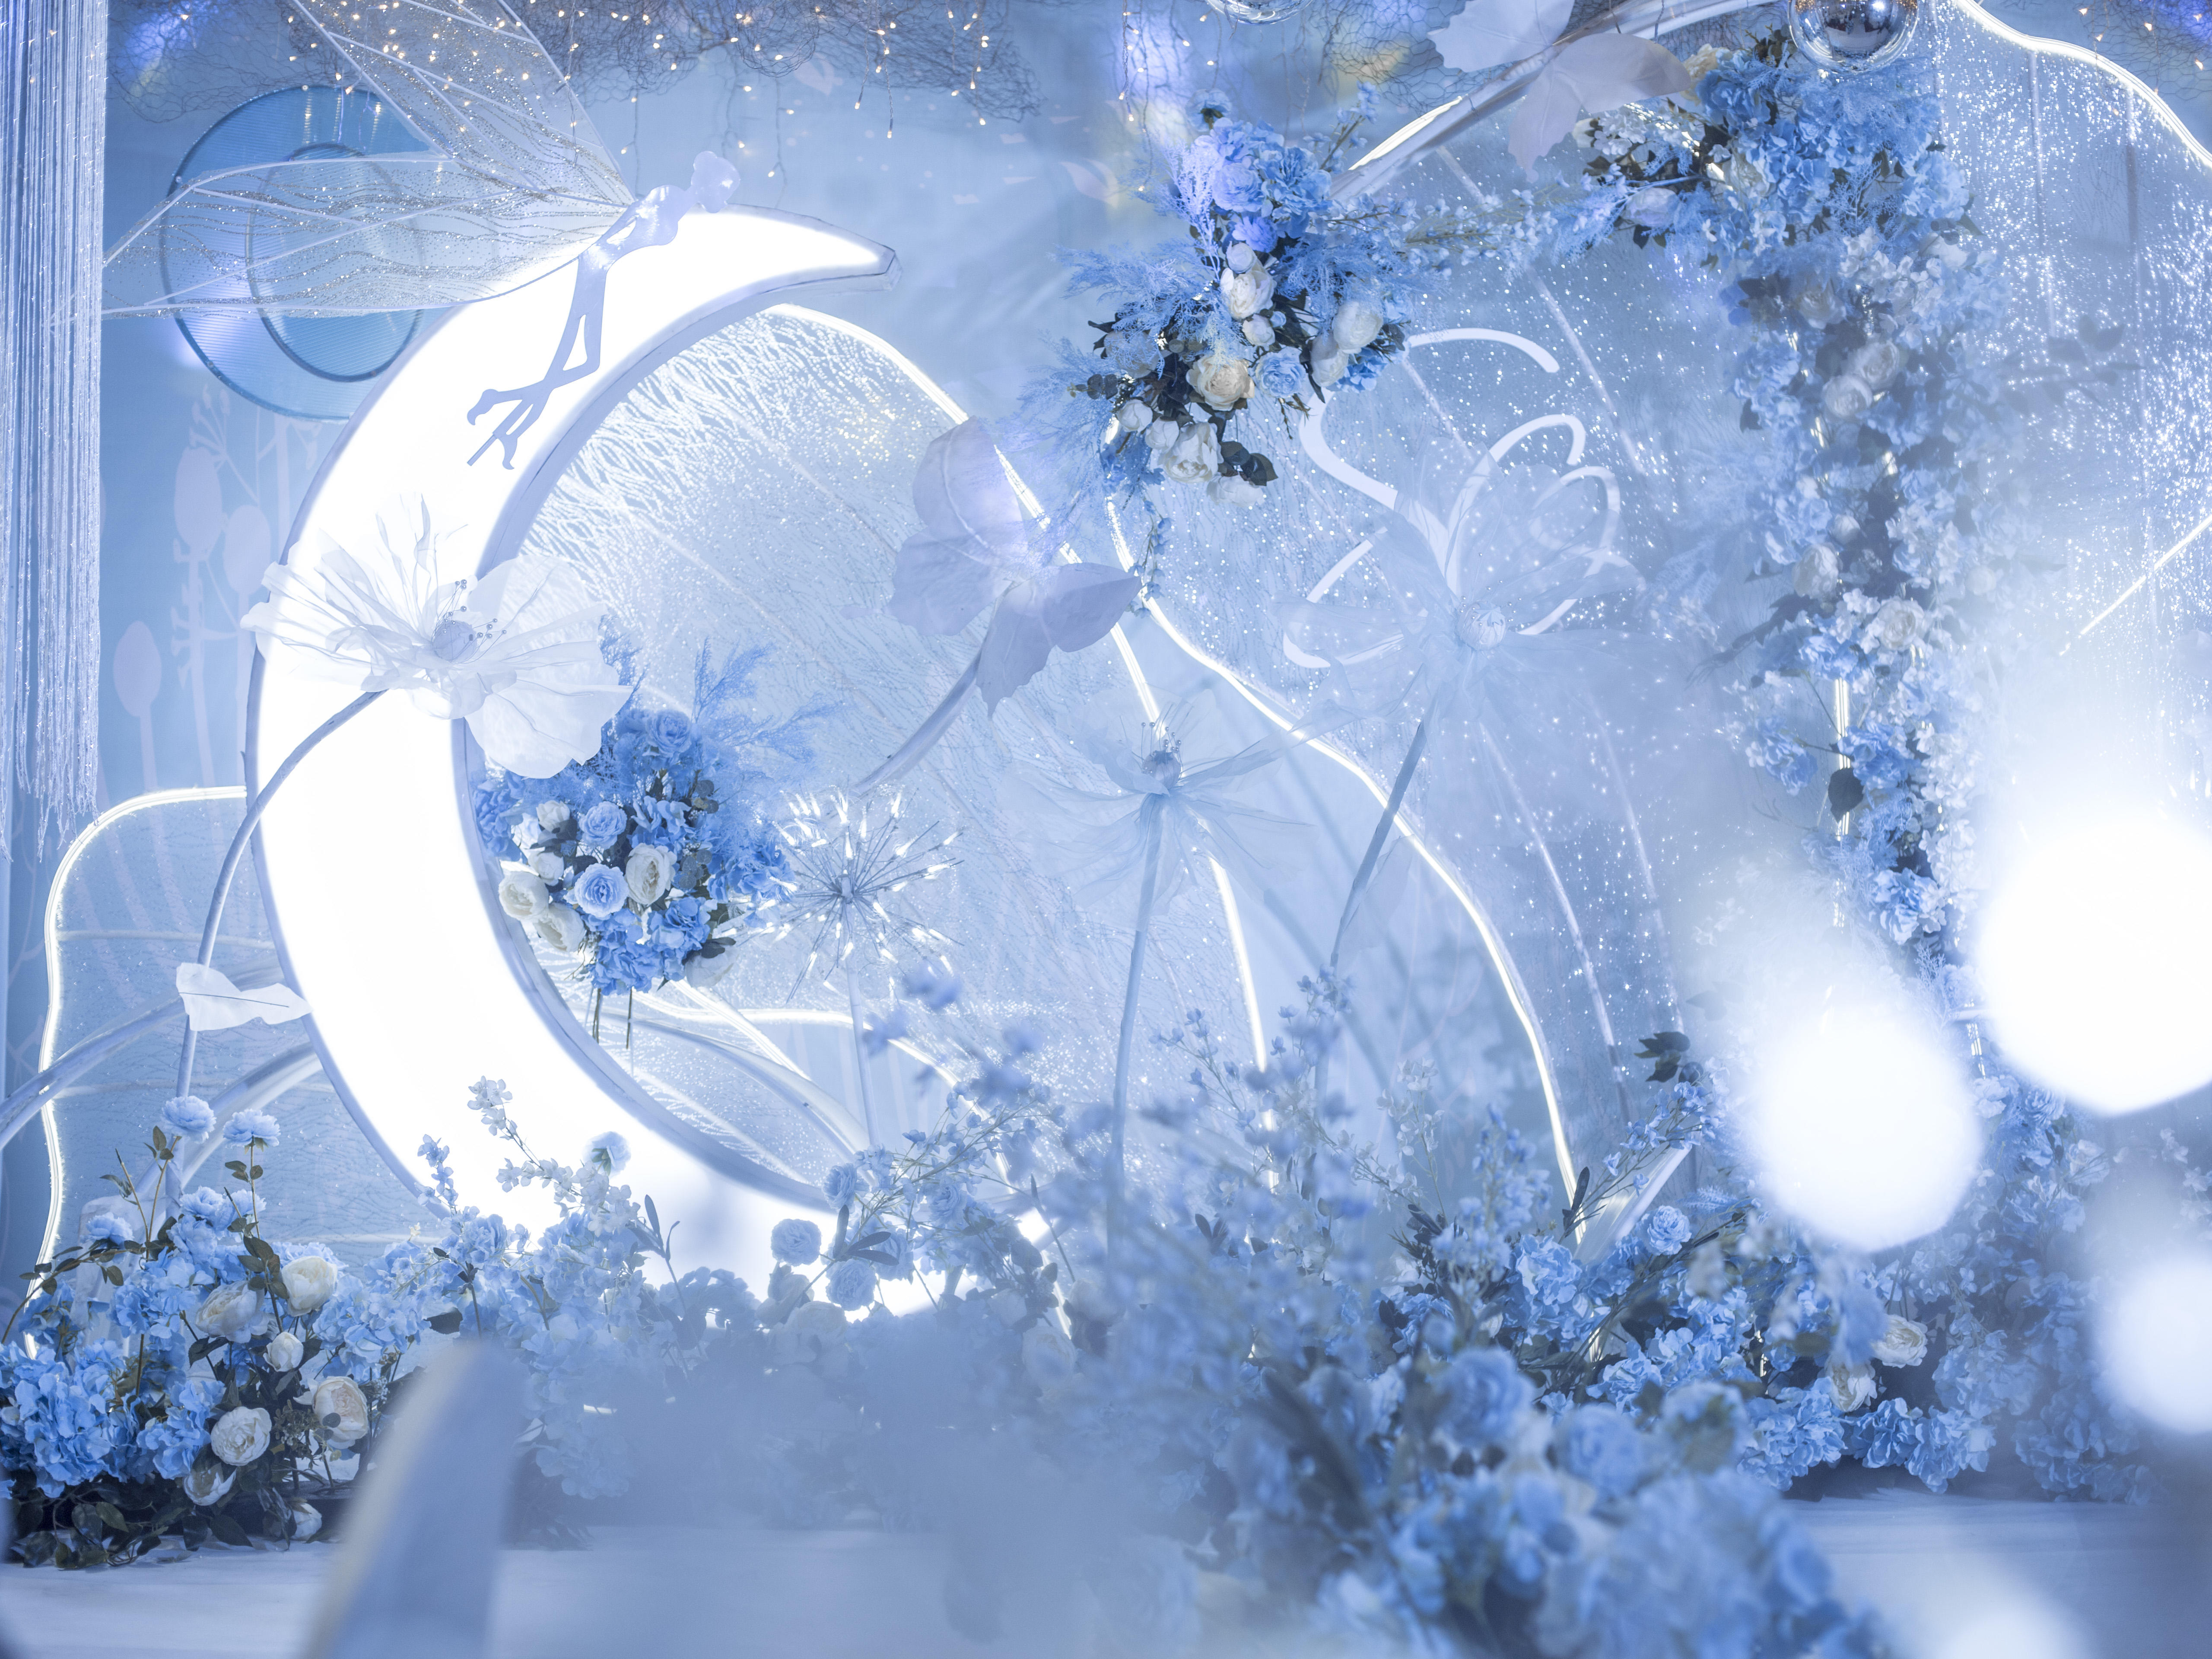 【罗漫婚礼】奇异花朵蓝白梦幻风格#婚礼棚#